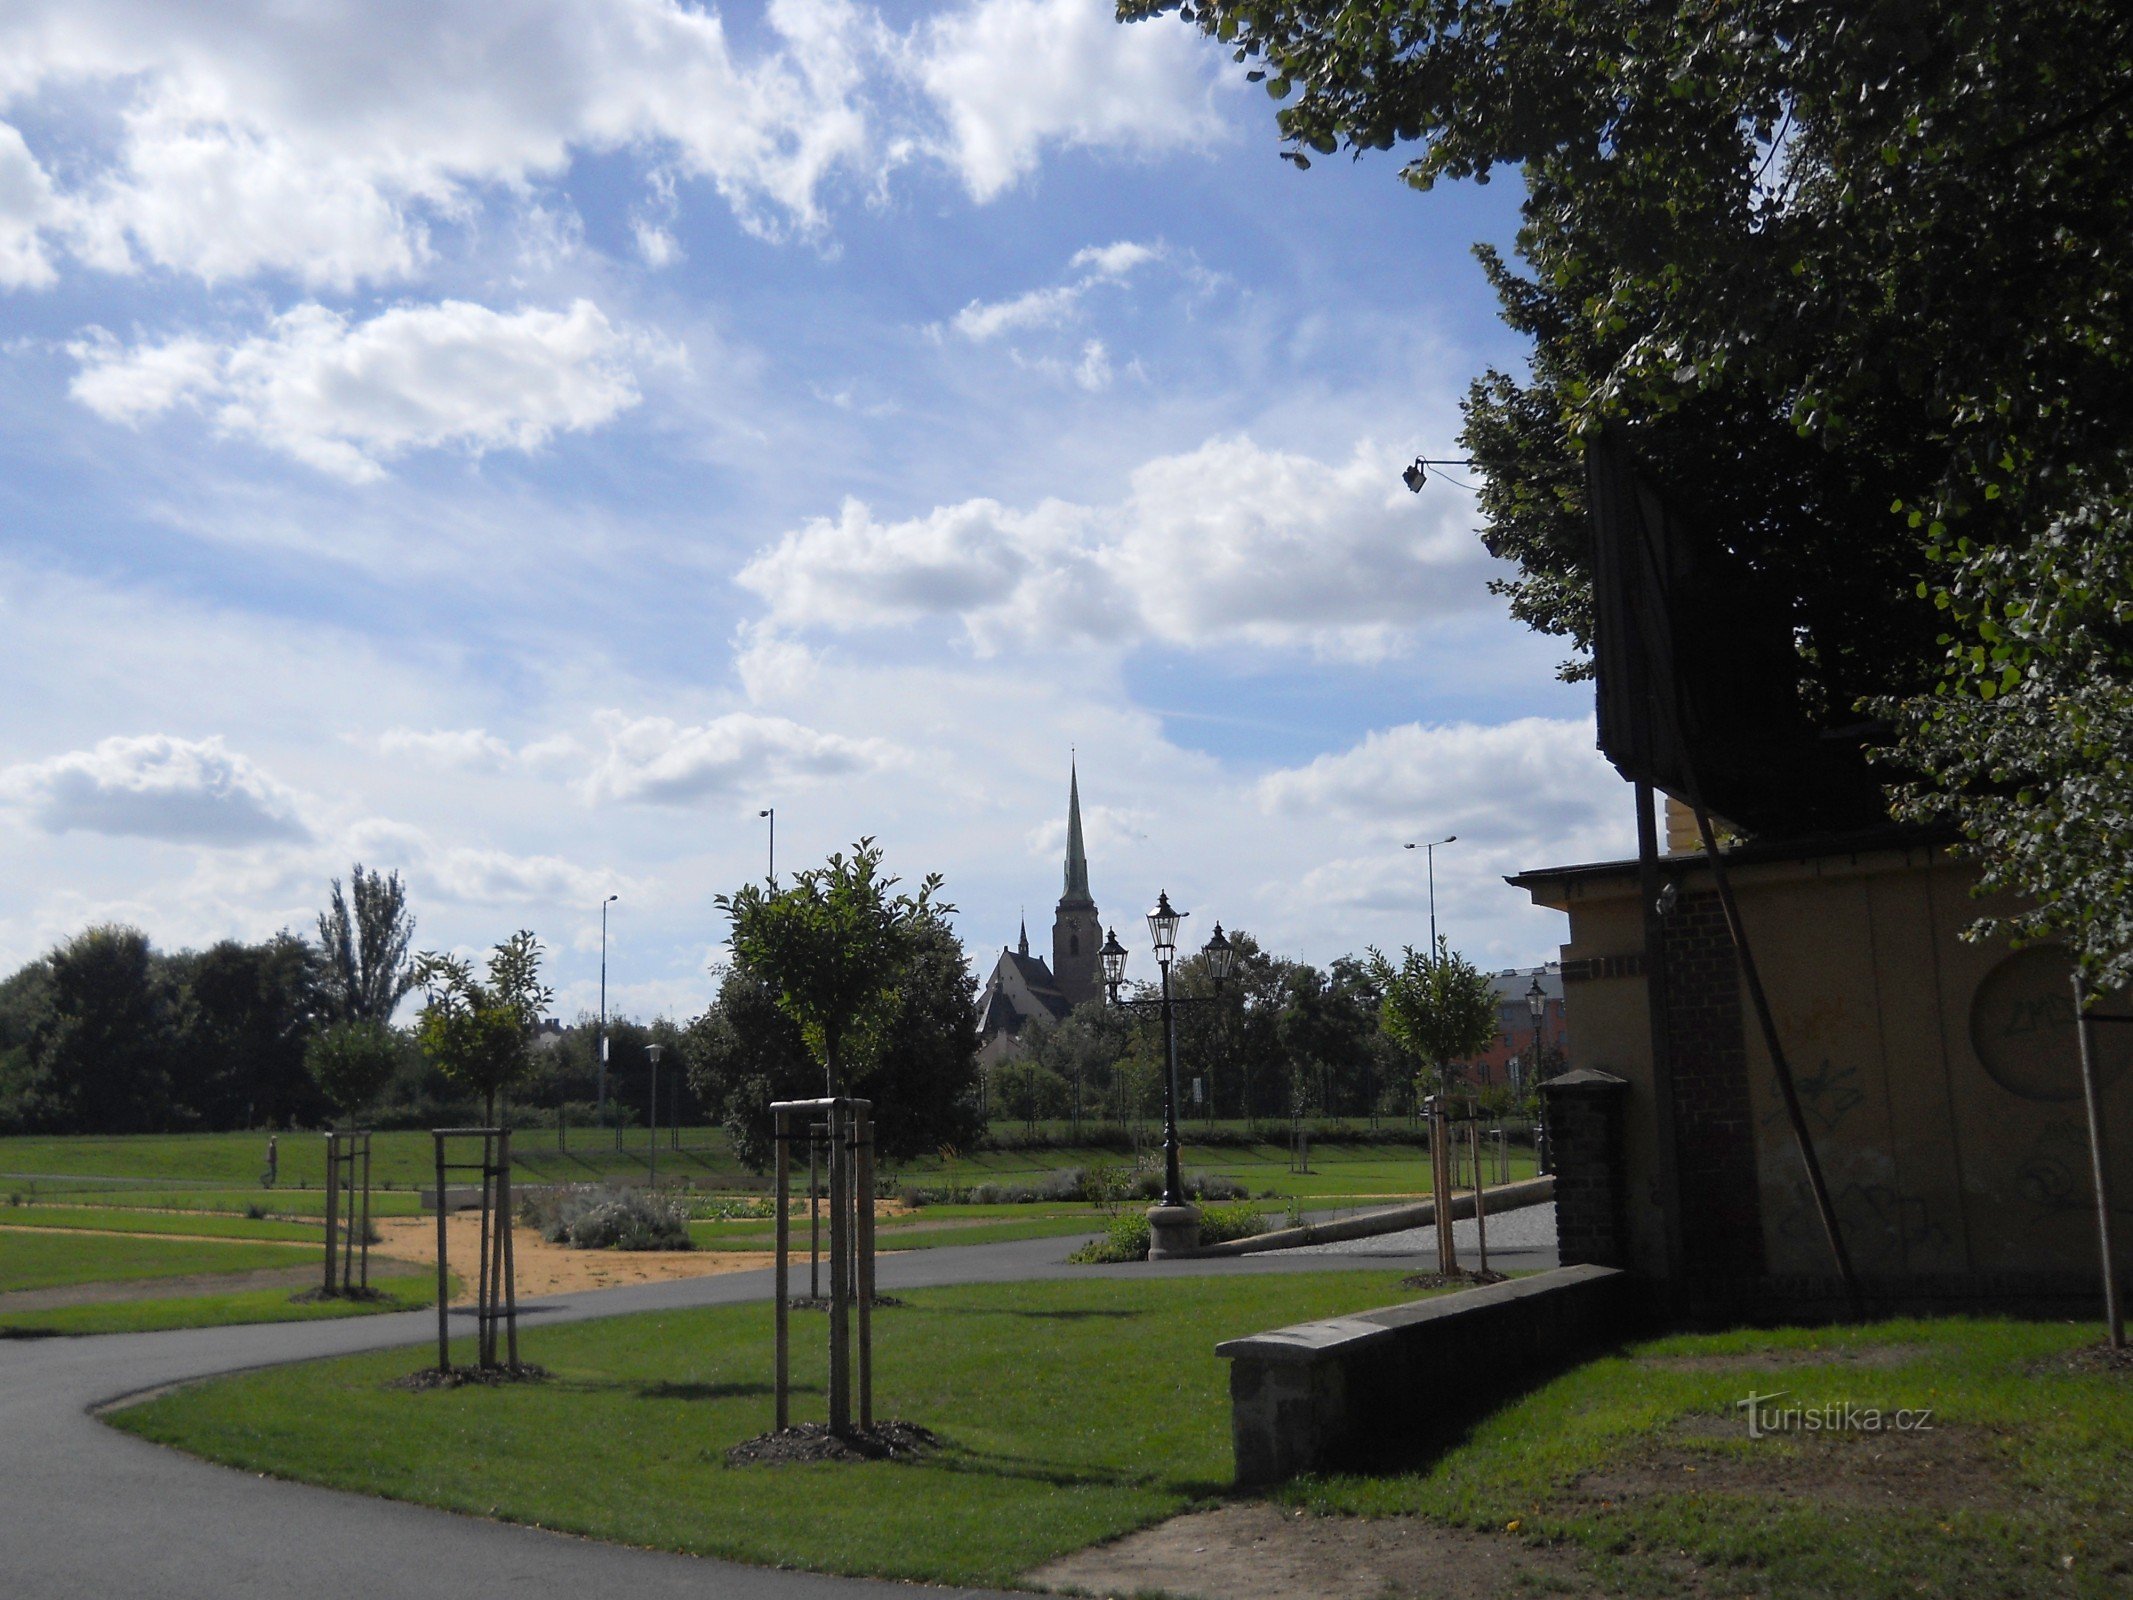 Eintritt in den Park mit Blick auf den Pilsner Dom St. Bartholomäus